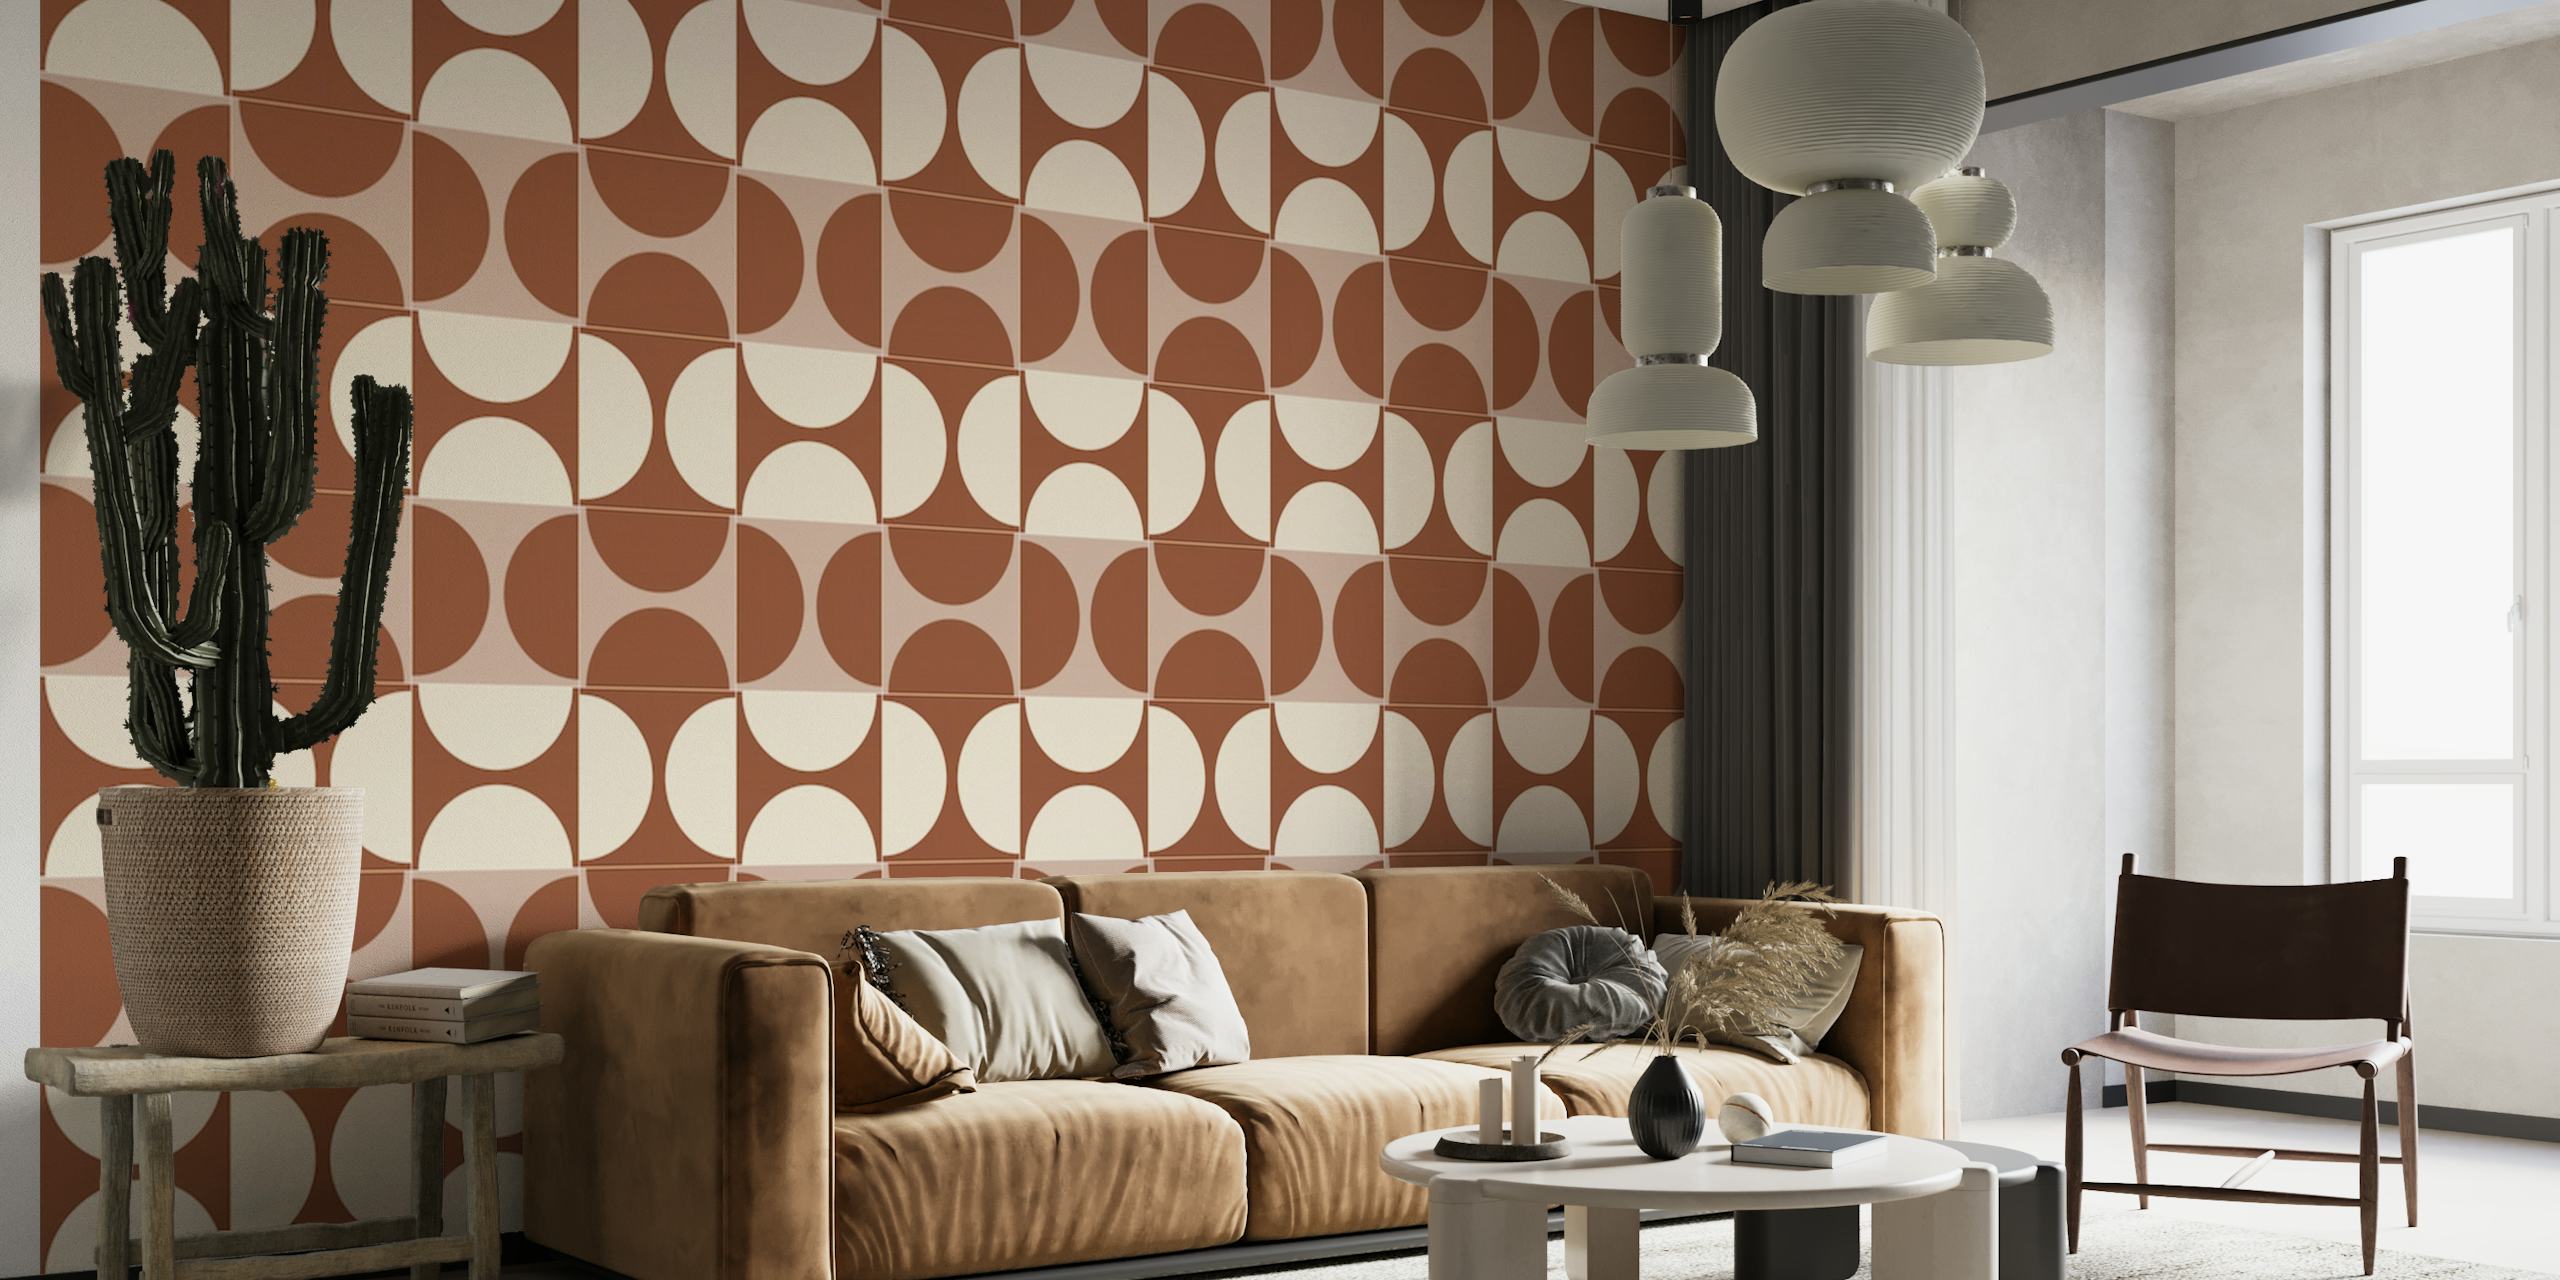 Cotto Tiles Cinnamon and Cream Lines mønster til vægmaleri